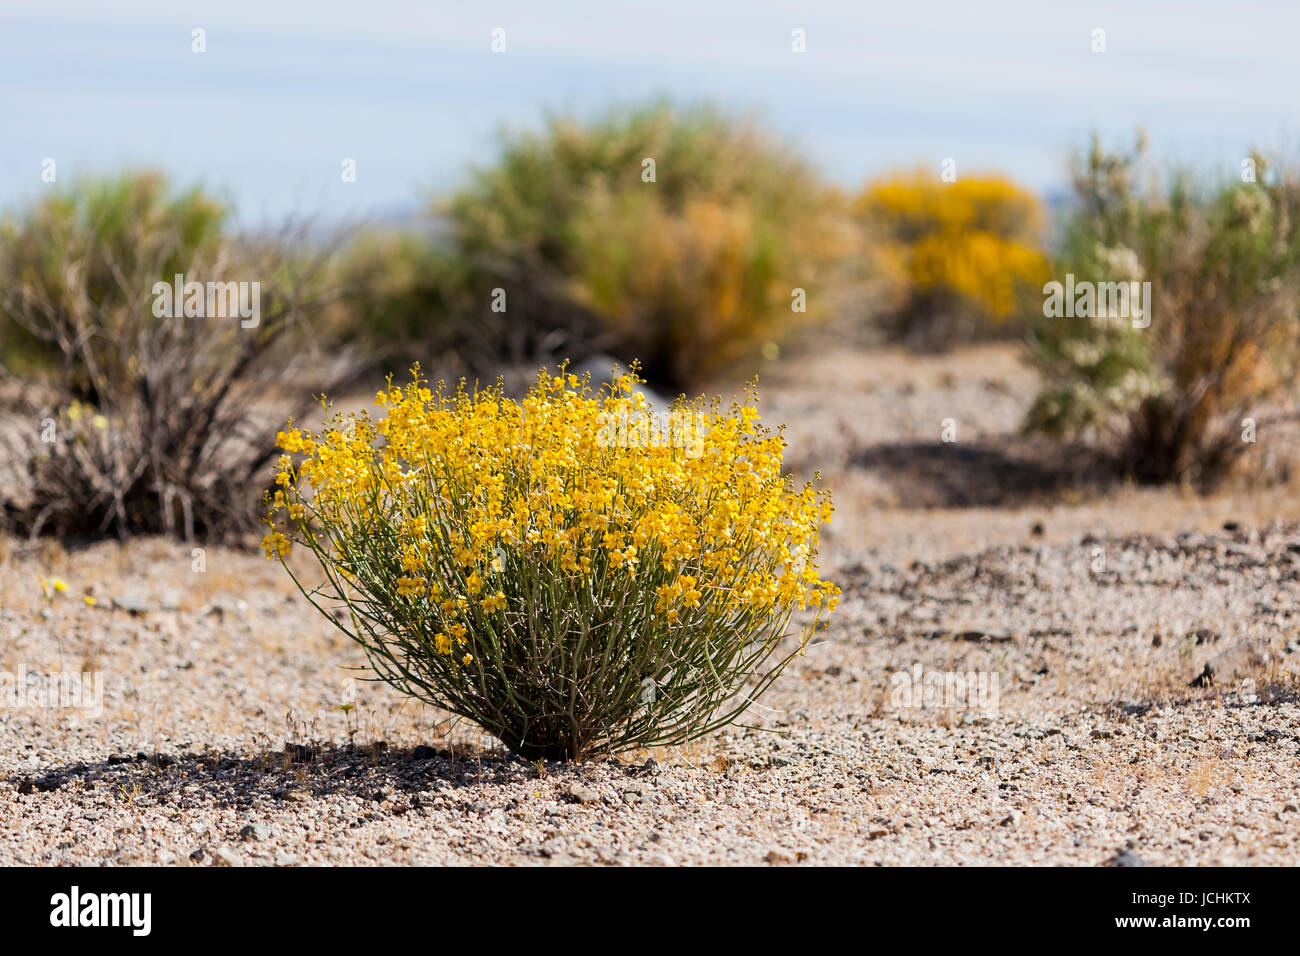 Deserto di fioritura e senna bush (Senna armata) sul pavimento del deserto - Deserto Mojave, California USA Foto Stock